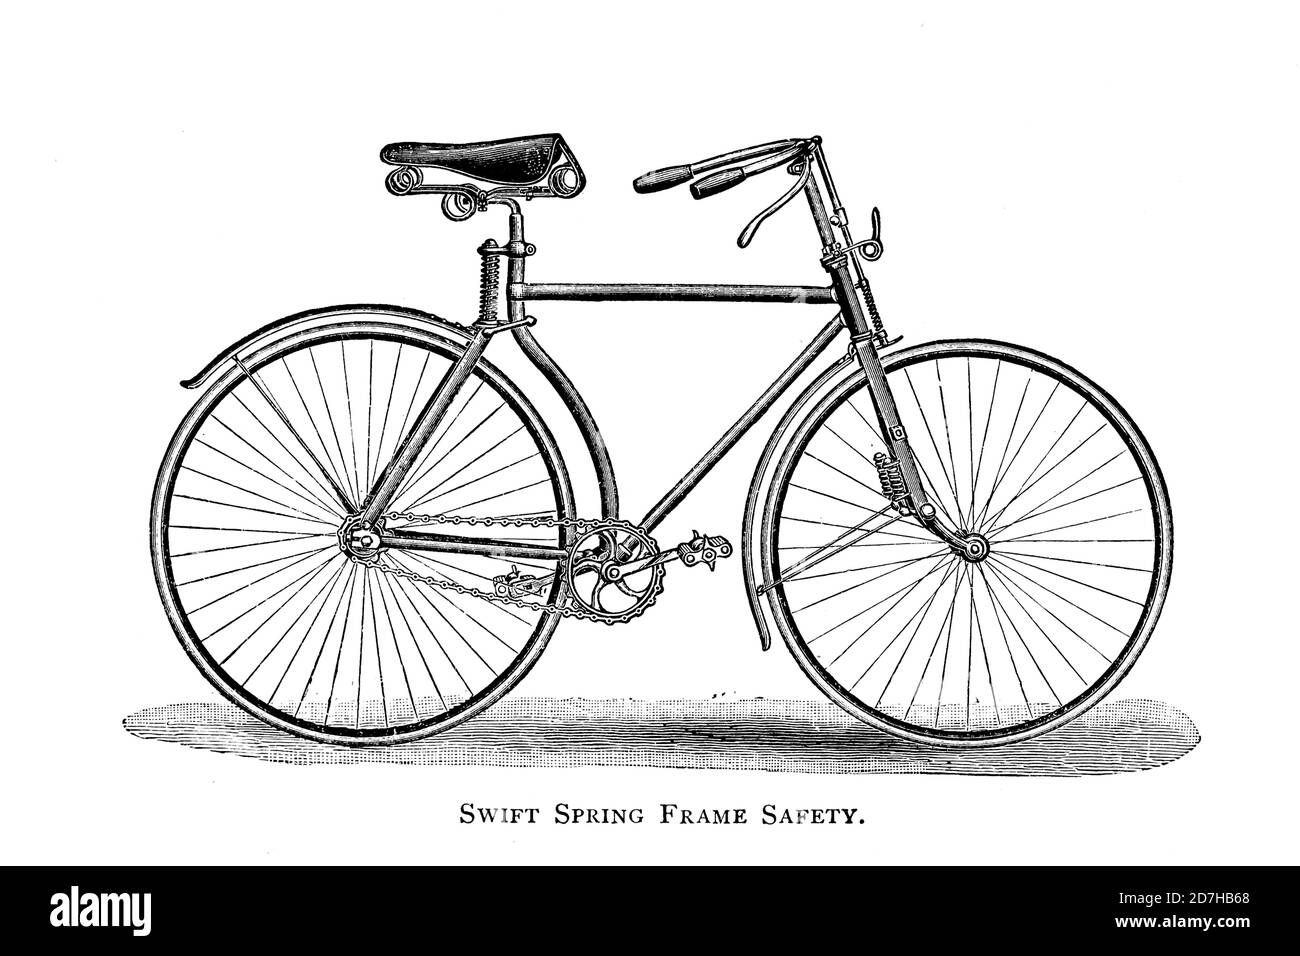 Vélo de sécurité SWIFT Spring Frame de Wheeling, un manuel indispensable pour les cyclistes, avec plus de deux cents illustrations de porter, LUT Banque D'Images